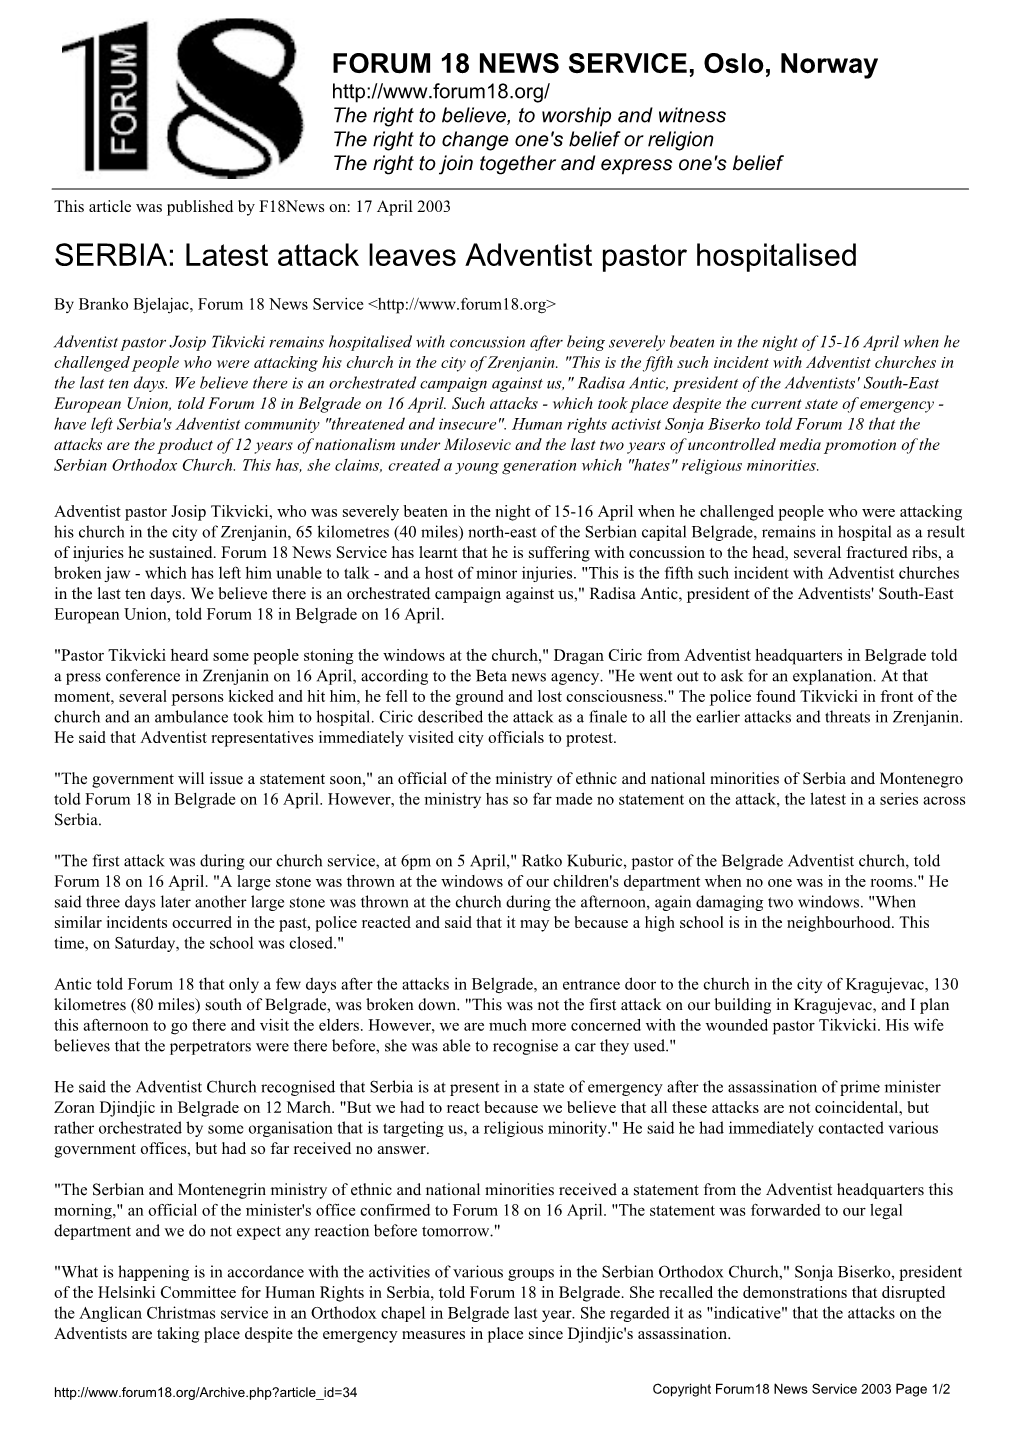 SERBIA: Latest Attack Leaves Adventist Pastor Hospitalised